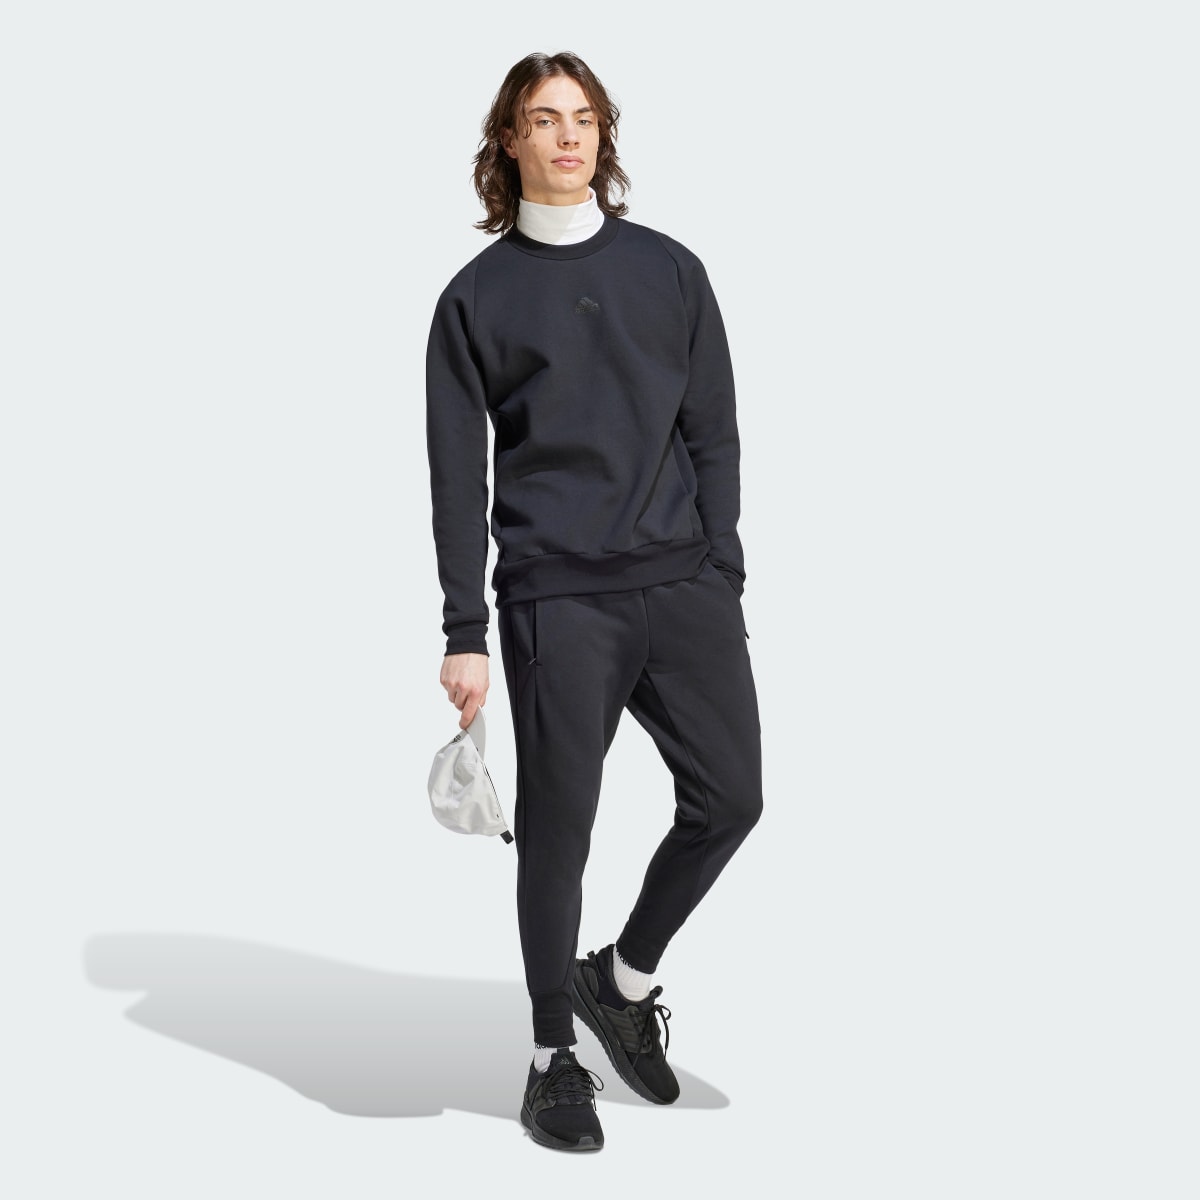 Adidas Z.N.E. Premium Sweatshirt. 5